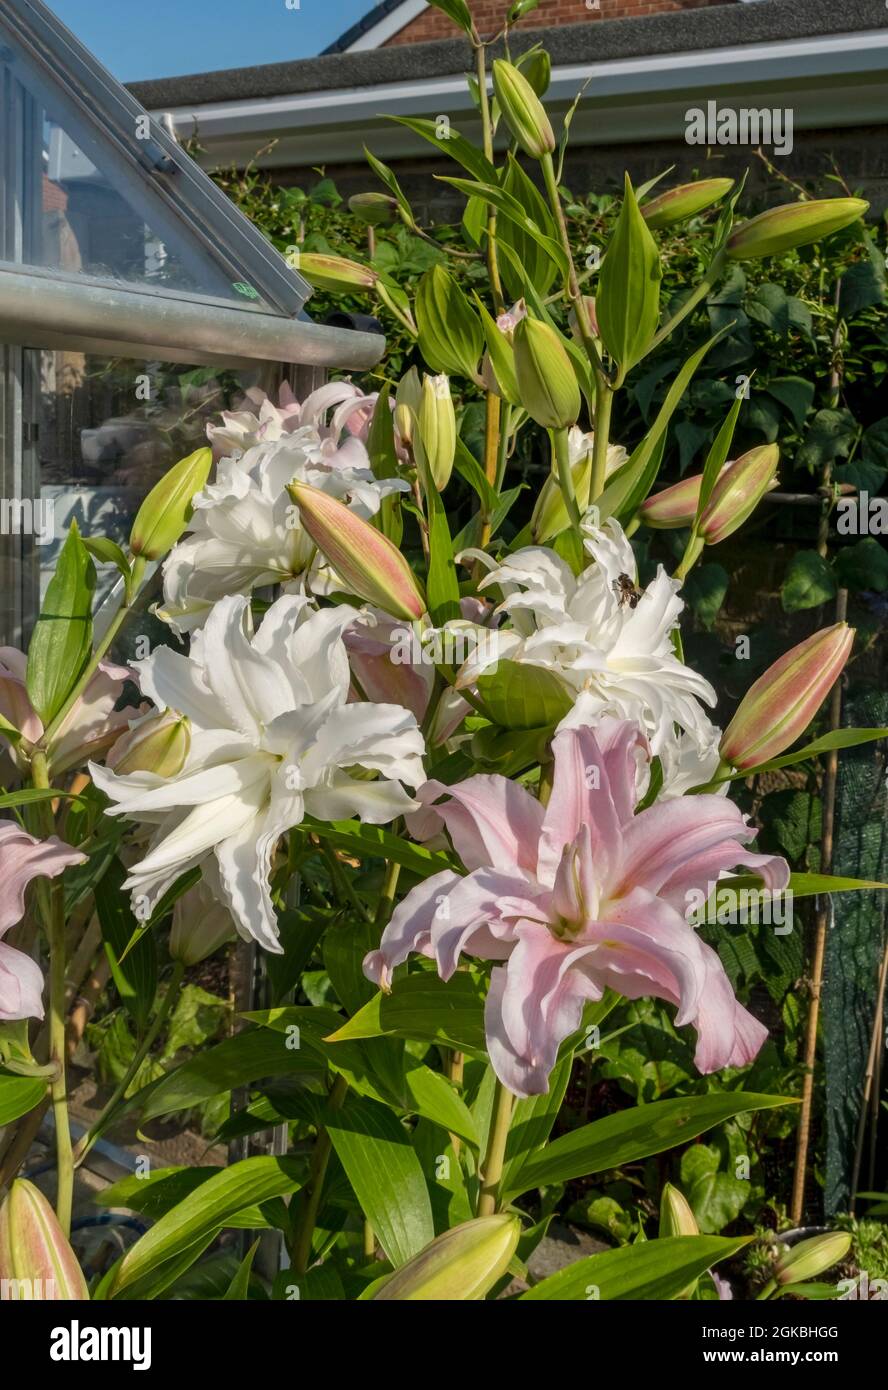 Primo piano di rosa e bianco doppio gigli orientali fiori che crescono nel giardino in estate Inghilterra Regno Unito GB Gran Bretagna Foto Stock